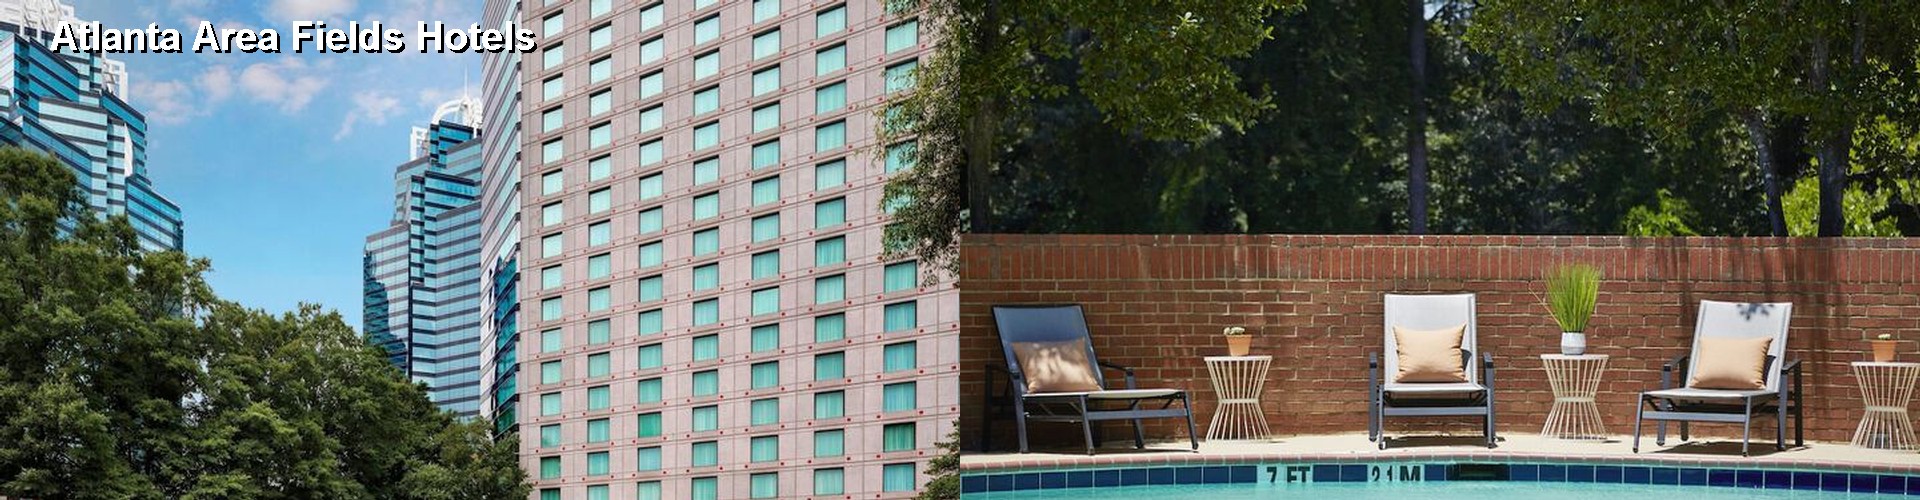 5 Best Hotels near Atlanta Area Fields